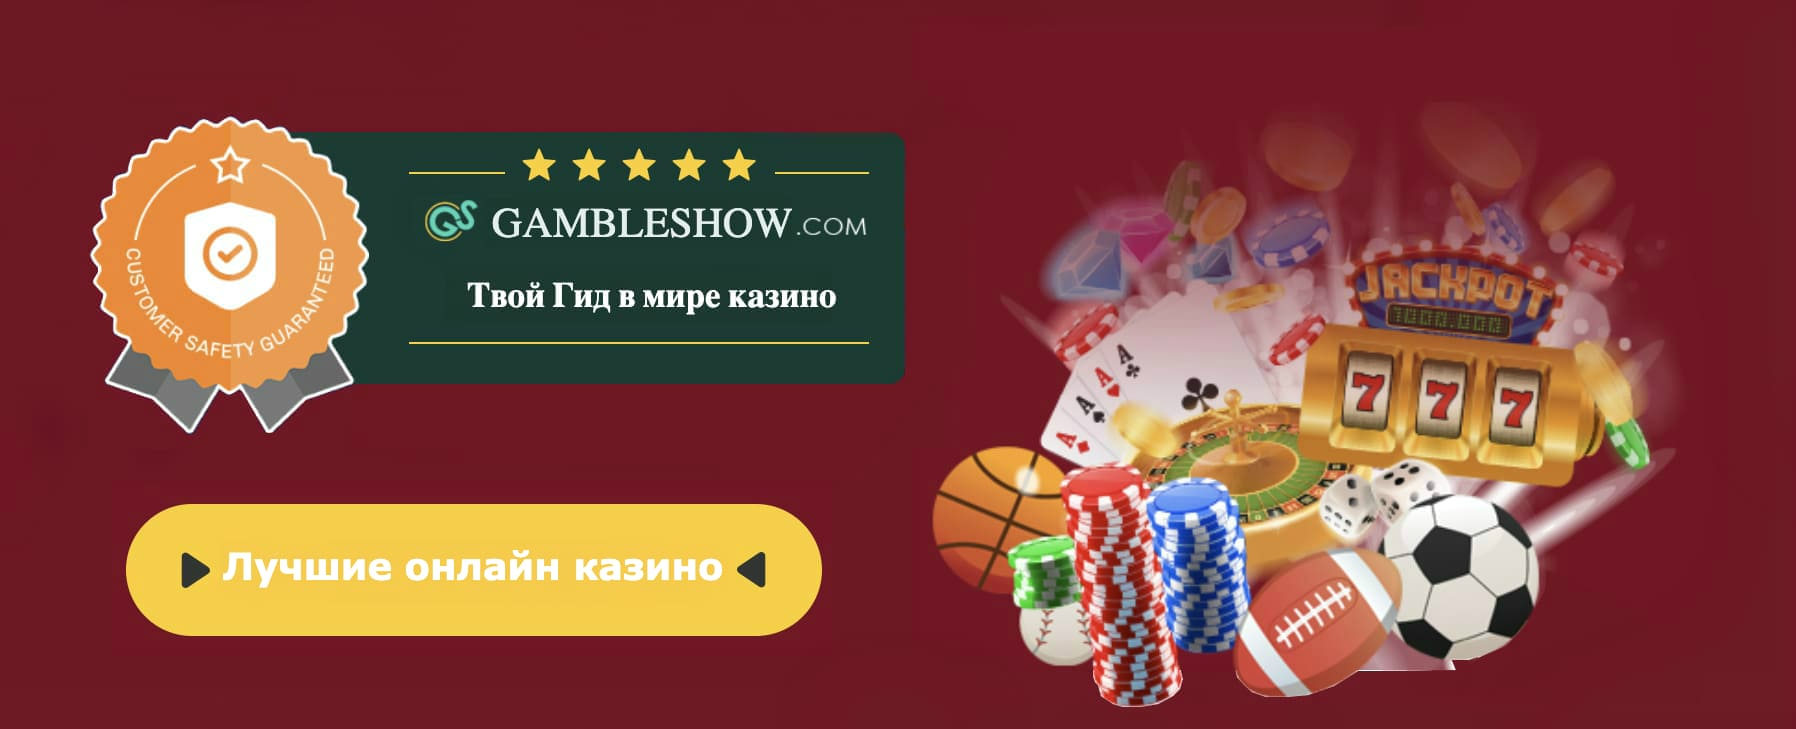 Online casino klage